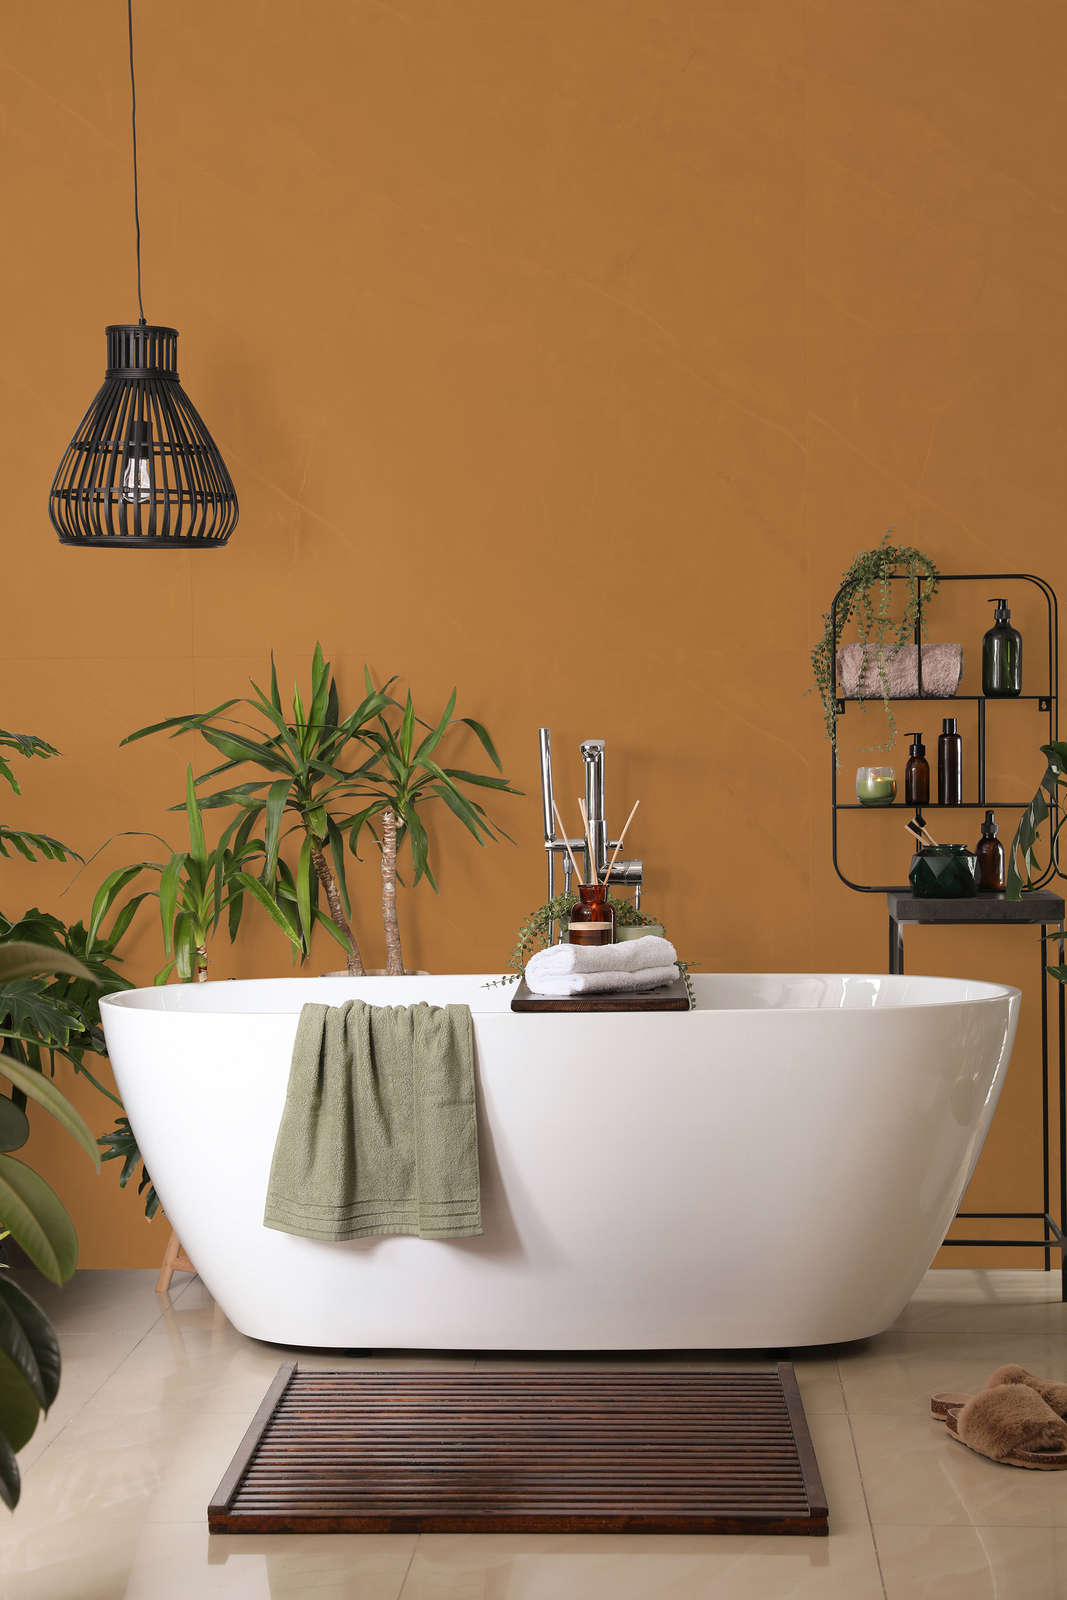             Premium Wandfarbe kräftiges Hellbraun »Beige Orange/Sassy Saffron« NW814 – 1 Liter
        